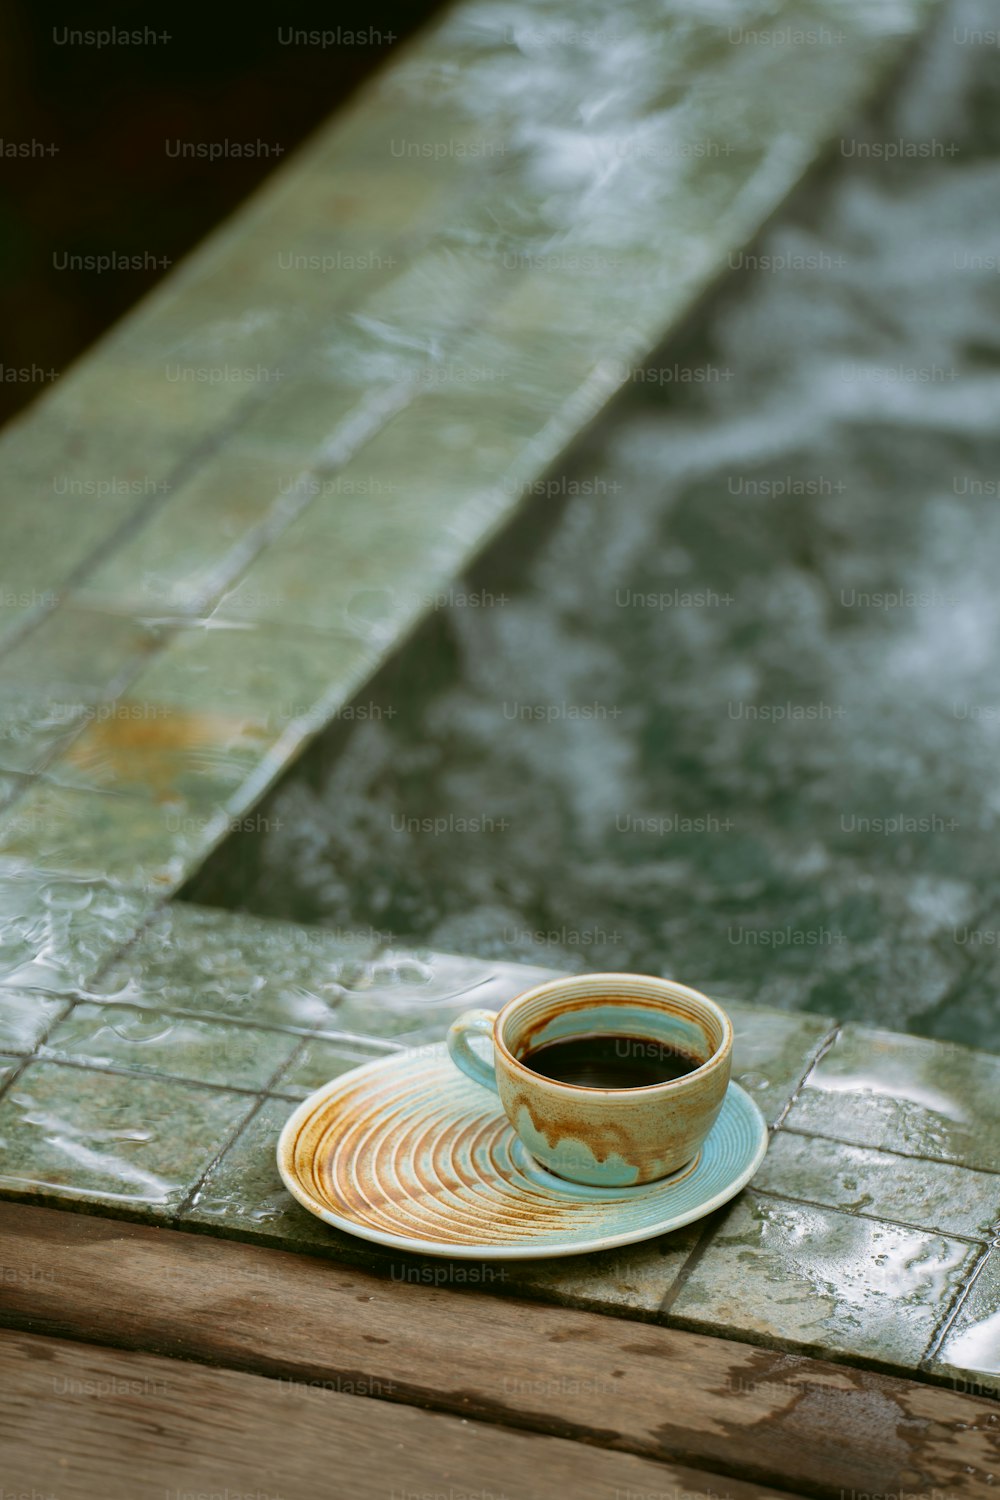 접시 위에 놓인 커피 한 잔